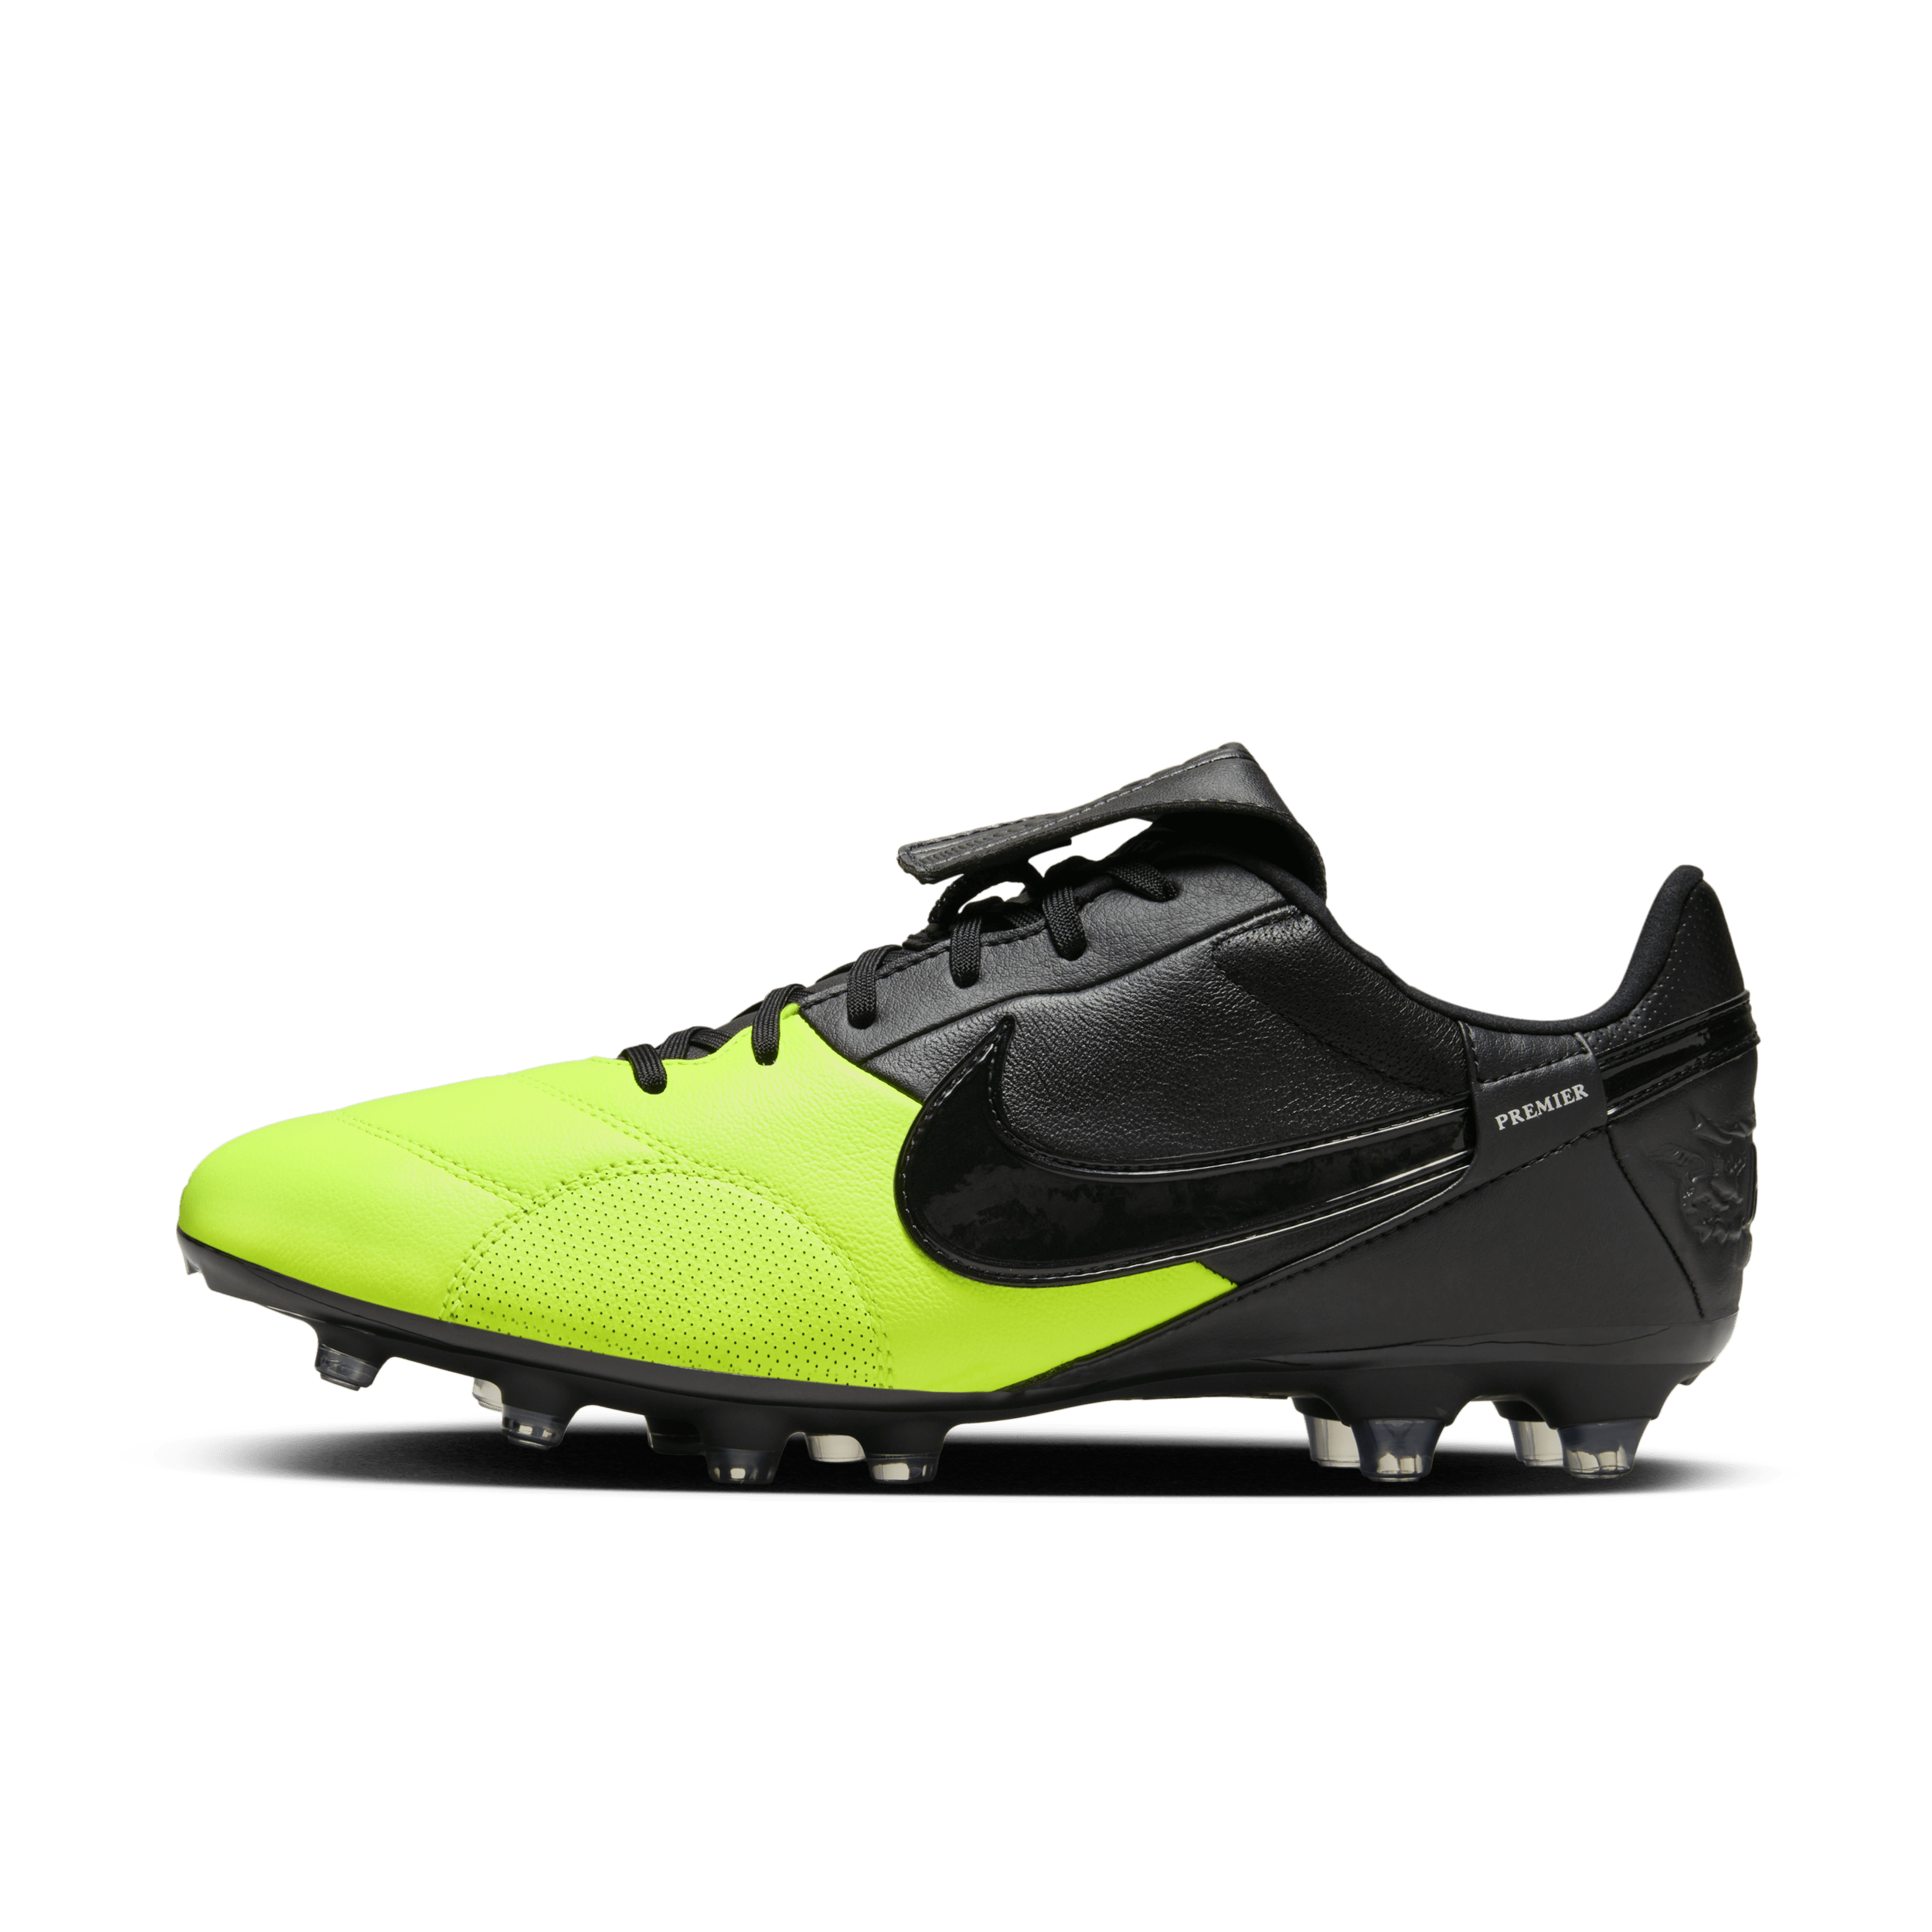 NikePremier 3-fodboldstøvler til græs - sort